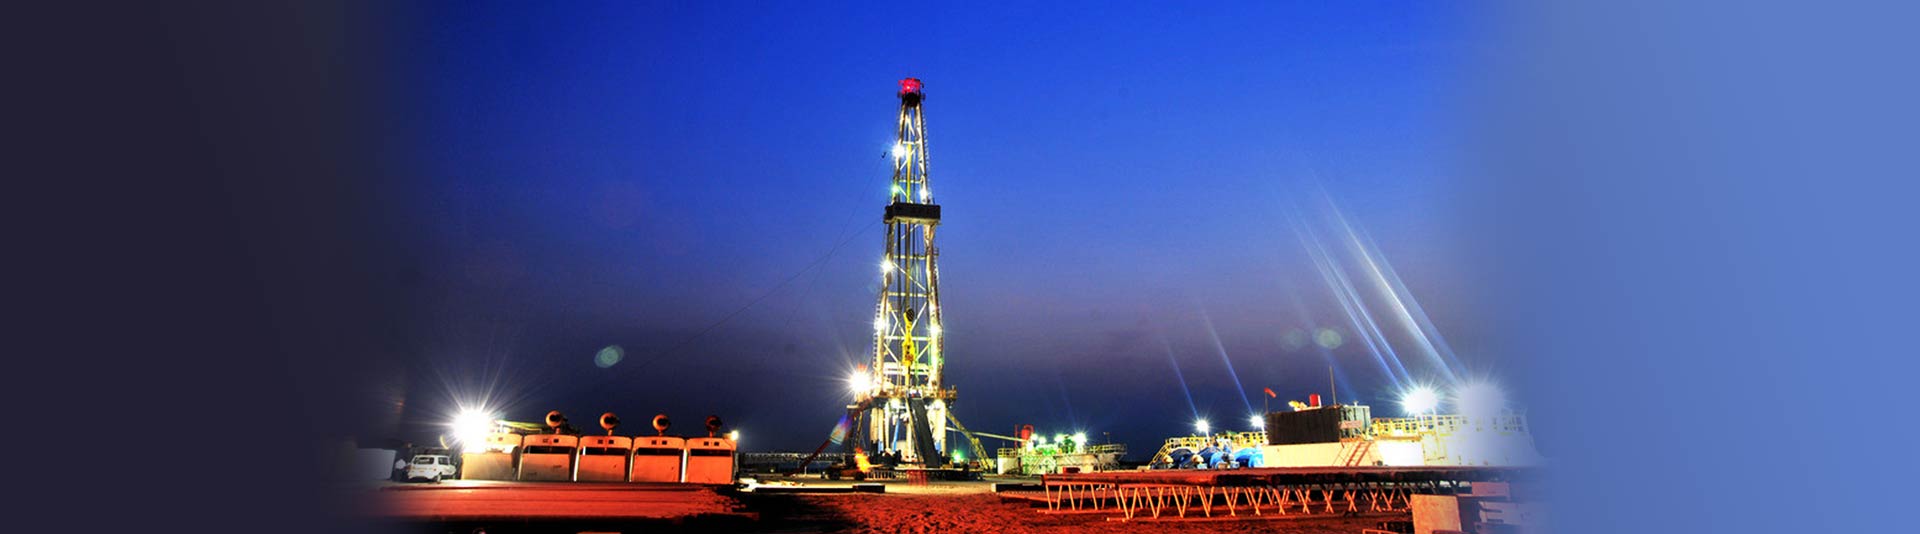 Petroleum drilling applications